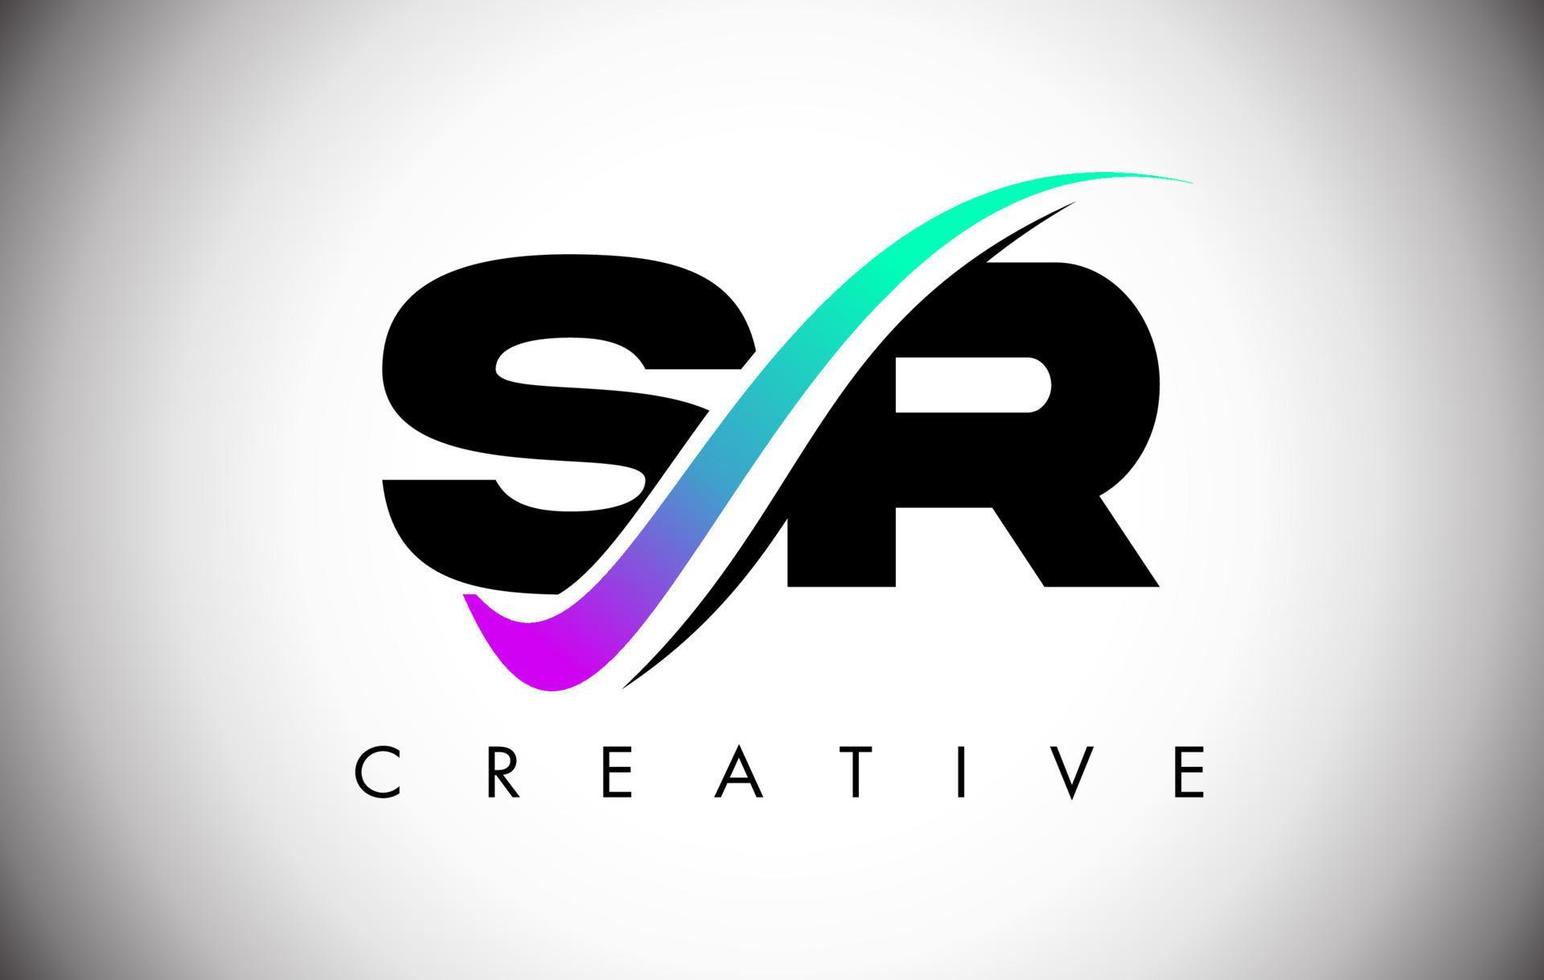 Logotipo de letra sr con línea curva swoosh creativa y fuente en negrita y colores vibrantes vector